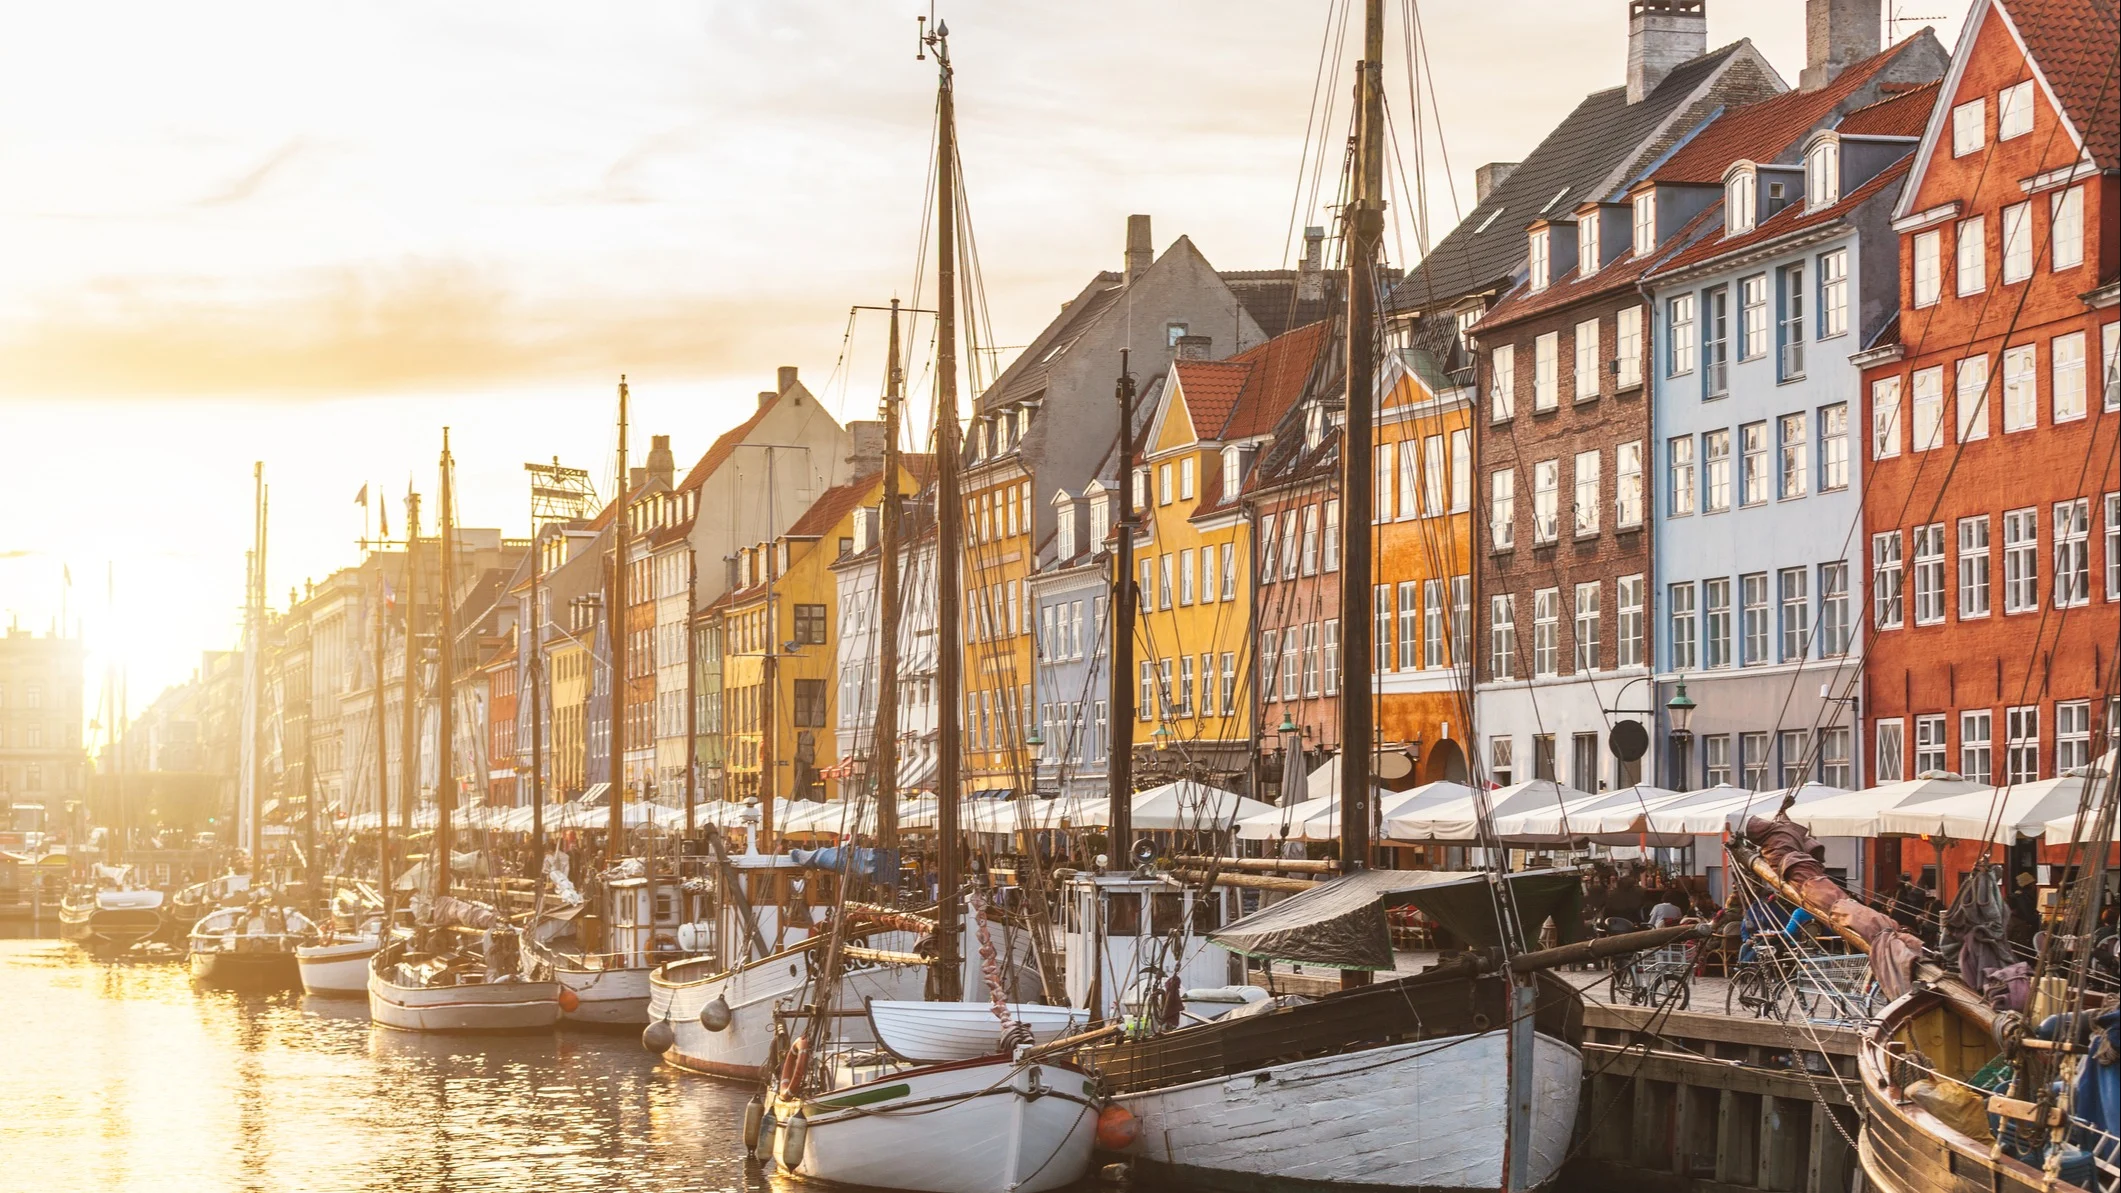 Besök Nyhavn i Köpenhamn med båtar och vackra husfasader tillsammans med CLUB Øresund.